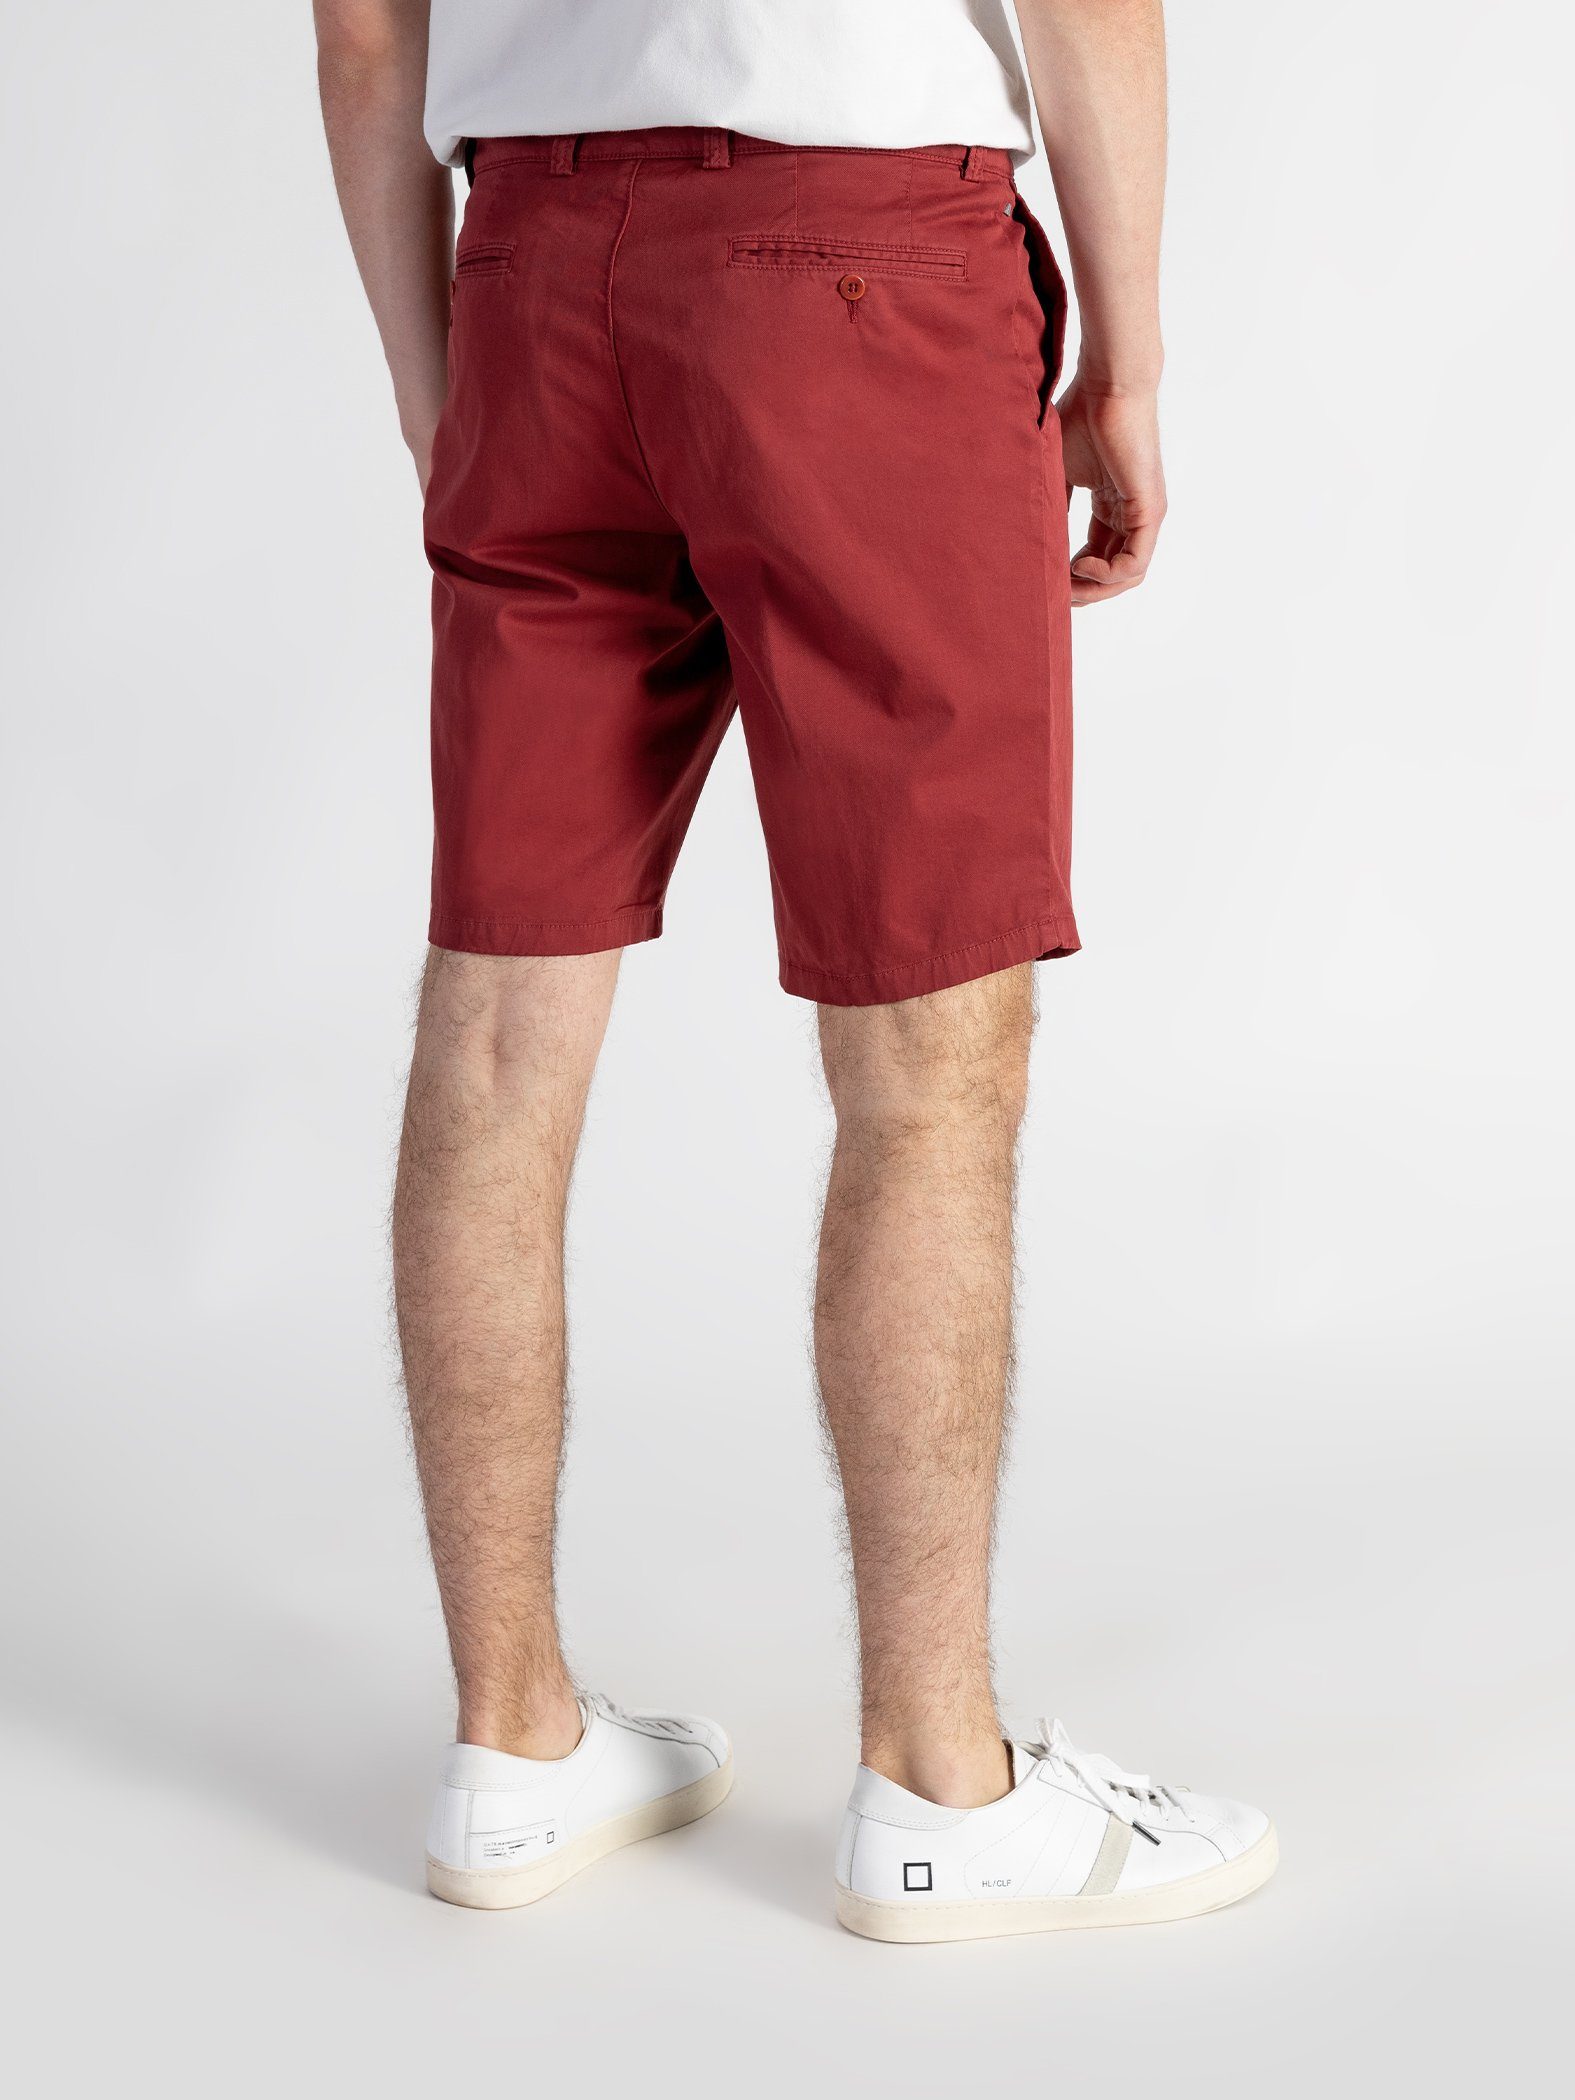 TwoMates Shorts Shorts mit elastischem Rot Farbauswahl, Bund, GOTS-zertifiziert